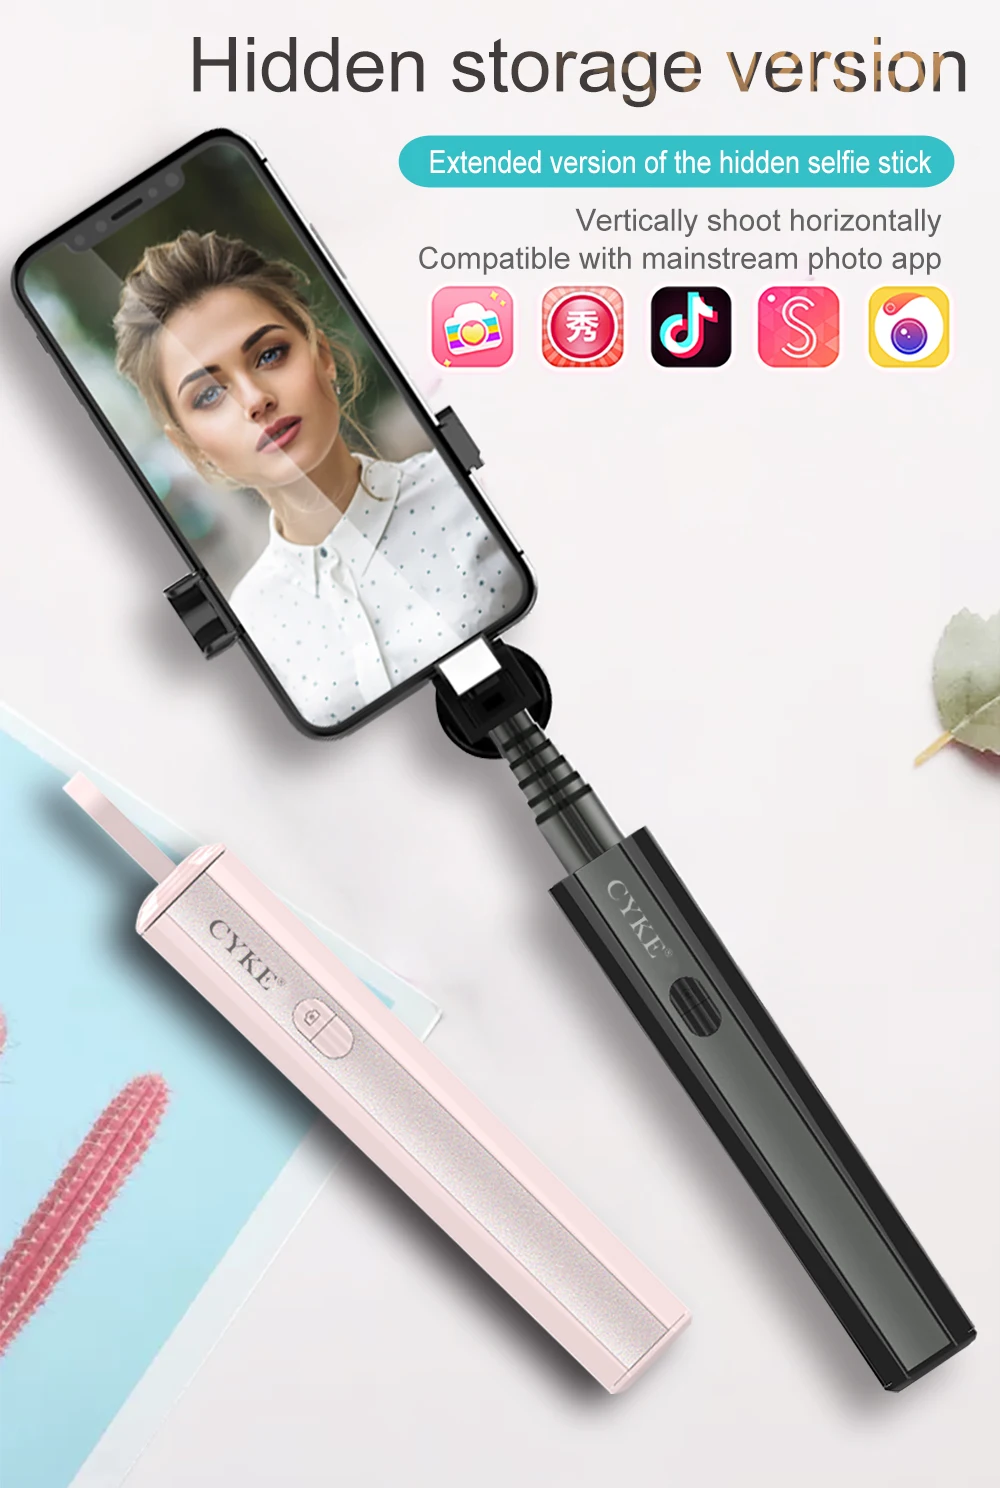 Беспроводная Bluetooth селфи-палка для телефона Live Mini складная палка из алюминиевого сплава дистанционная селфи-палка для iPhone samsung huawei